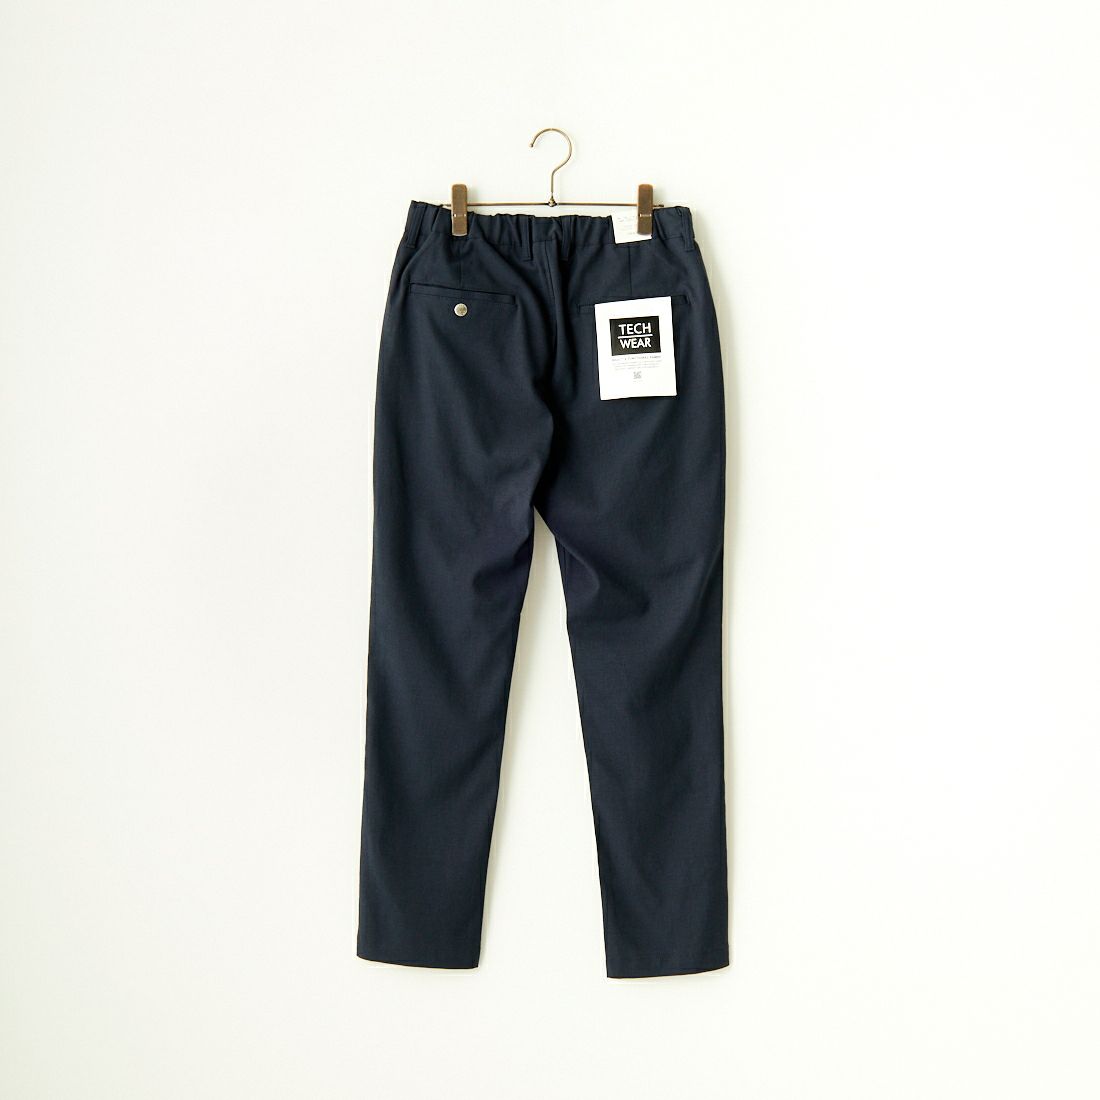 Jeans Factory Clothes [ジーンズファクトリークローズ] シェルタリング ドライオックス1Pイージートラウザー [JFC-241-006] 02 NVY